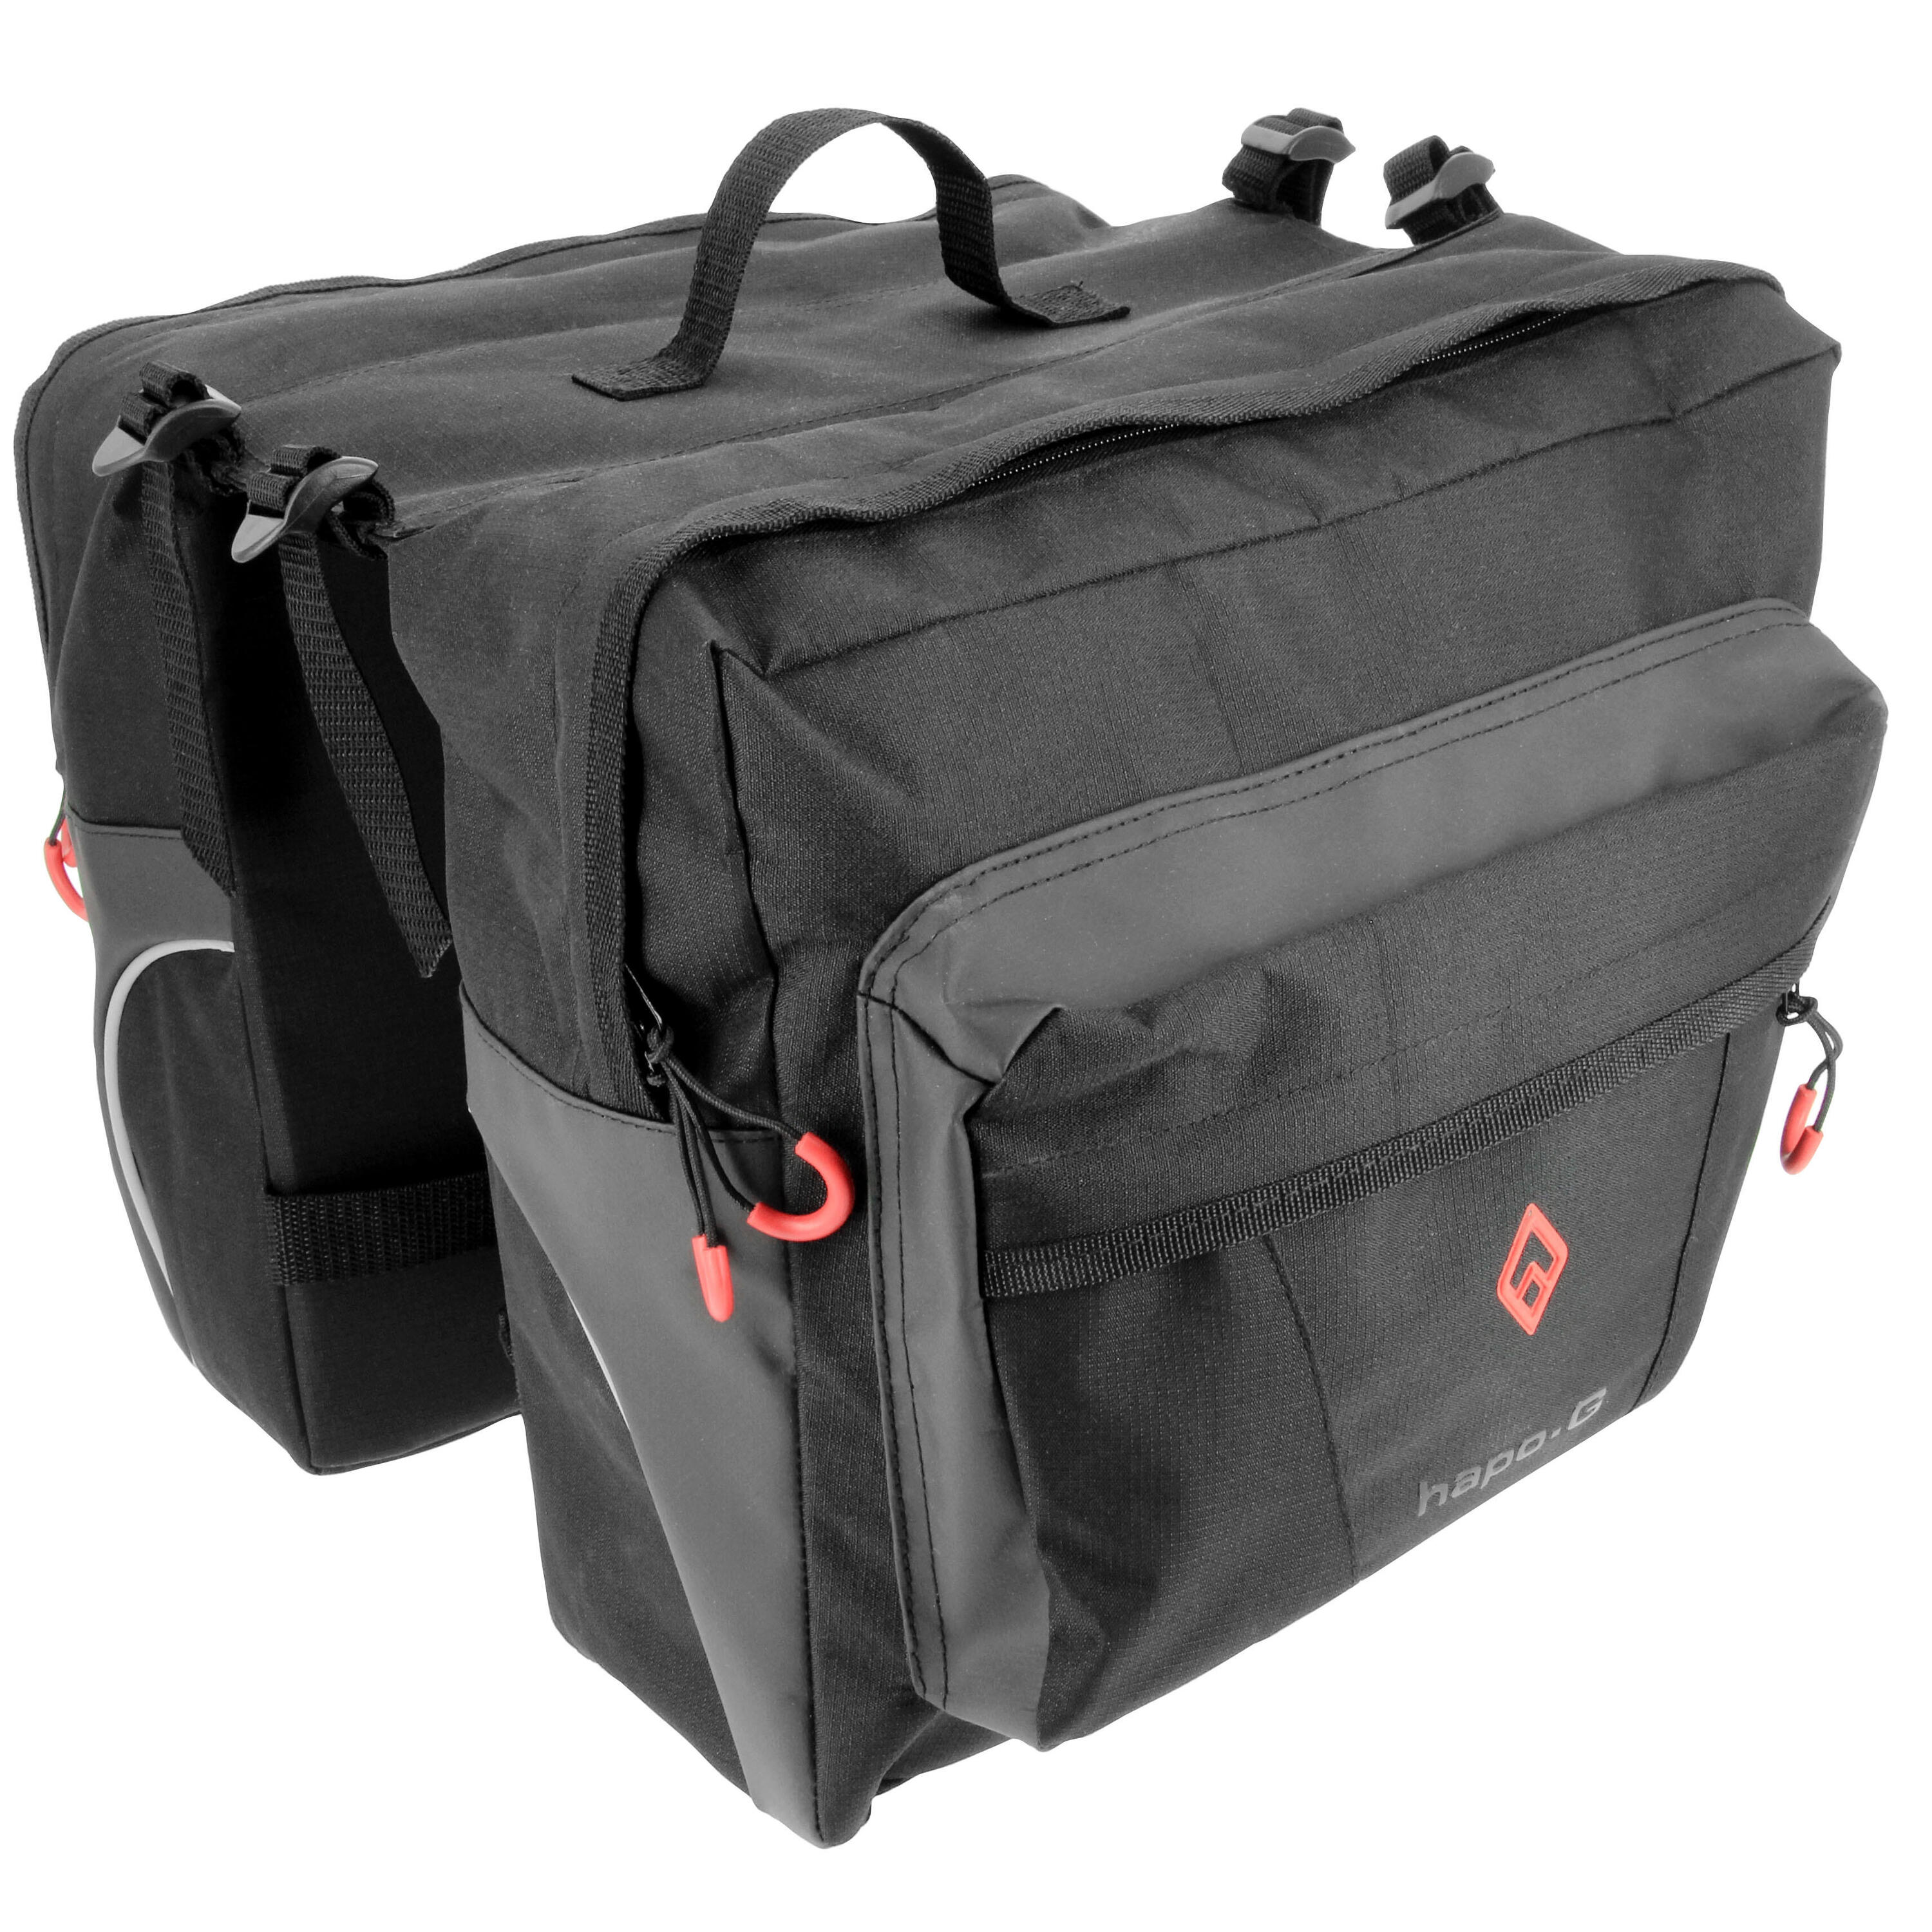 HAPO-G Cyclo Hapo-G New Rear Bags